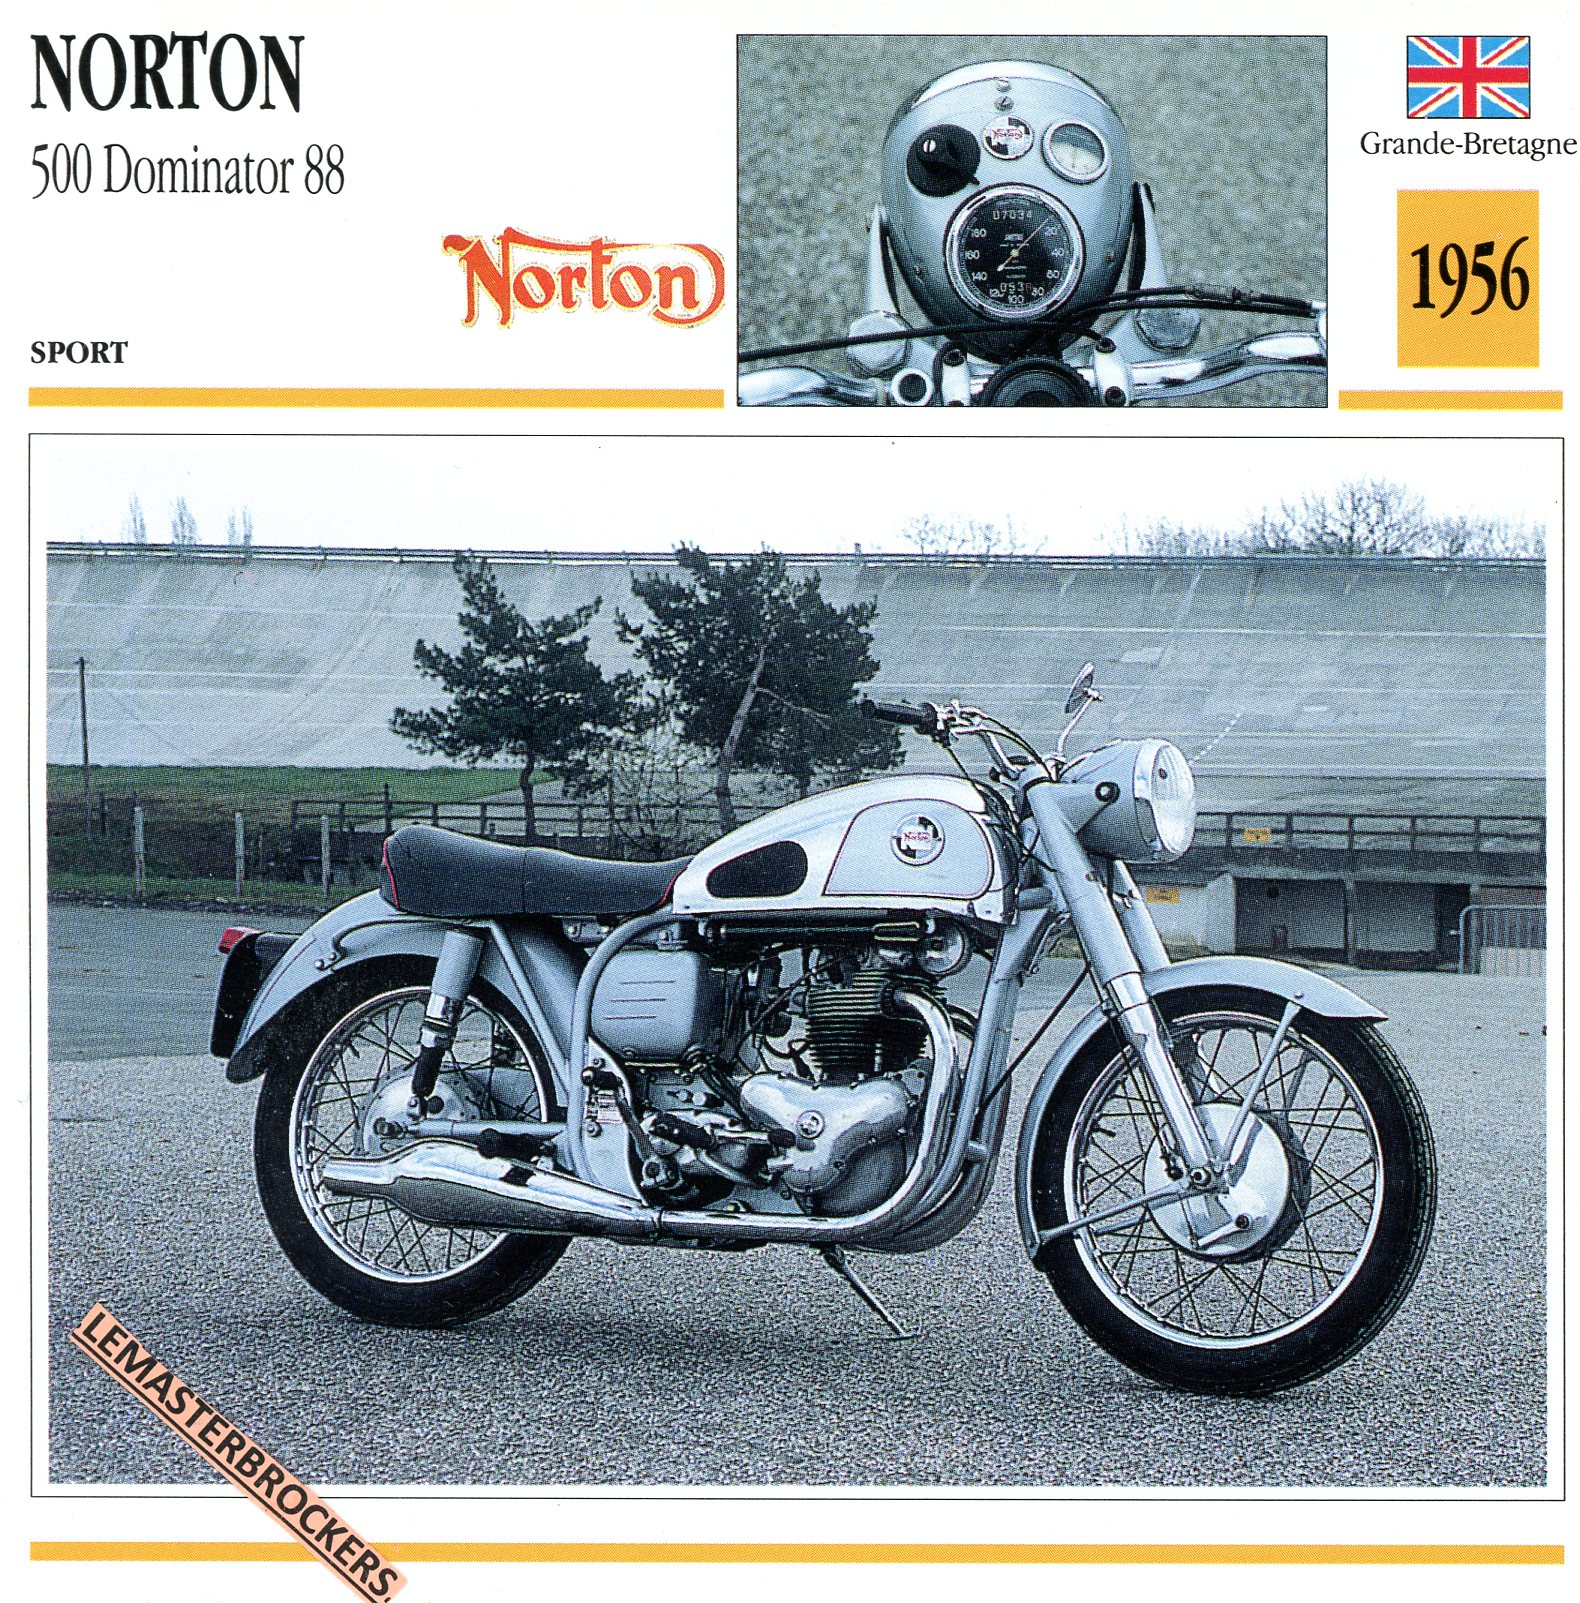 NORTON 500 DOMINATOR 88 1956 - FICHE MOTO COLLECTION ATLAS